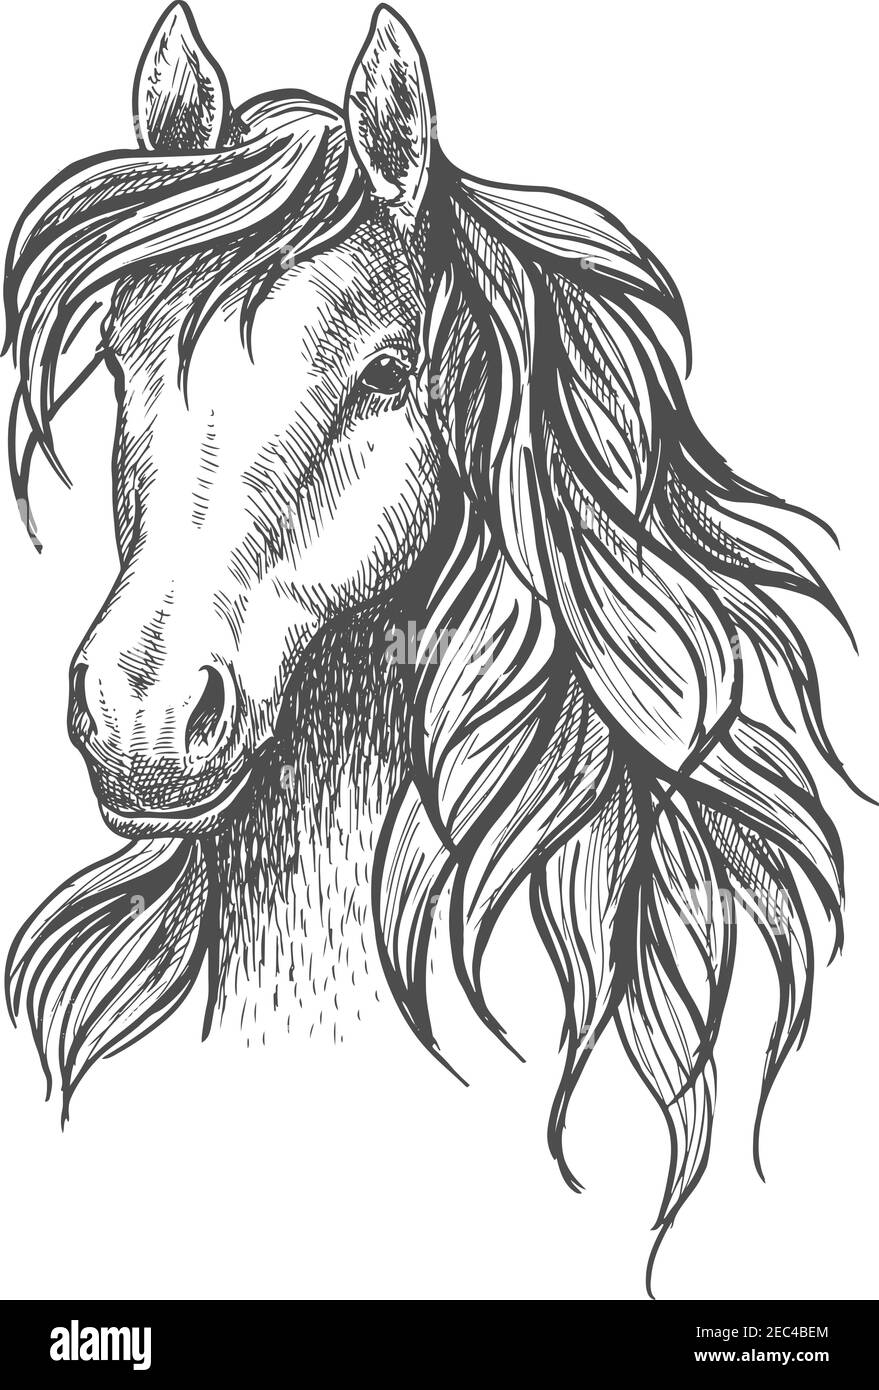 Junge Pferdekopf Skizze mit ruhigen Blick und schöne wellige Mähne, friedlichen Blick und eleganten Hals. Für Wildlife Symbol oder Maskottchen Design, Reiten spo Stock Vektor